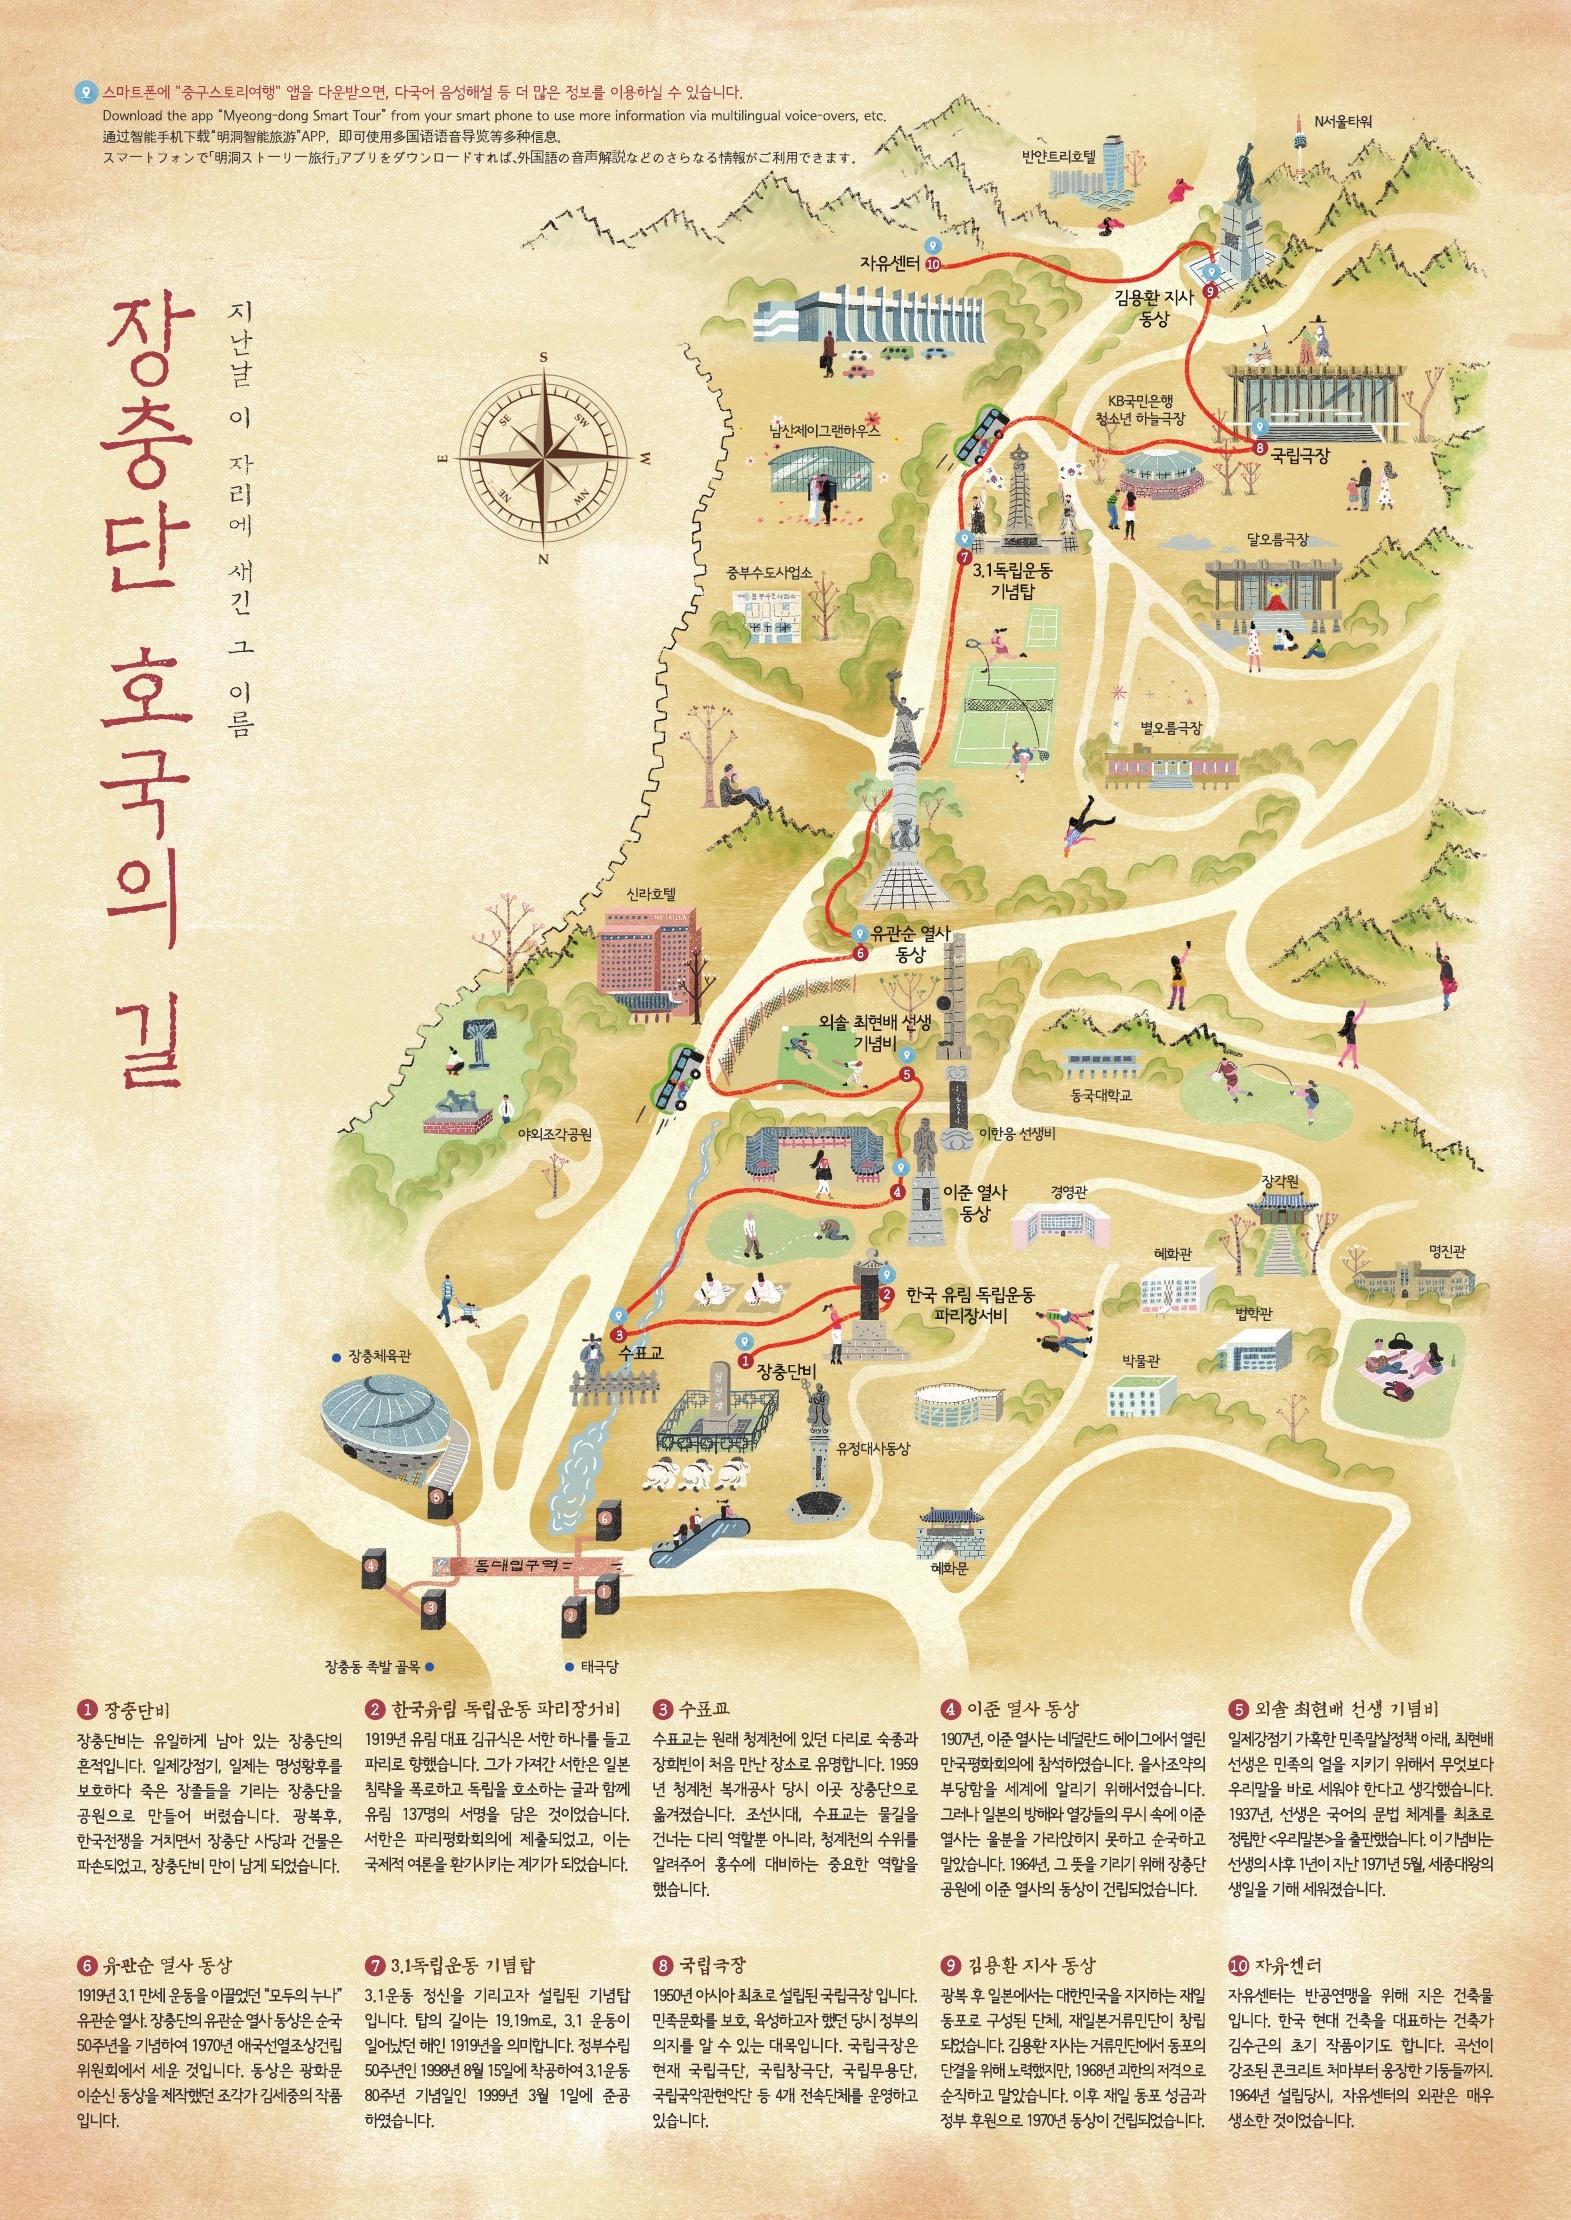 장충단 도보 탐방코스 '호국의 길' 안내도 (출처: 중구 문화관광 홈페이지)